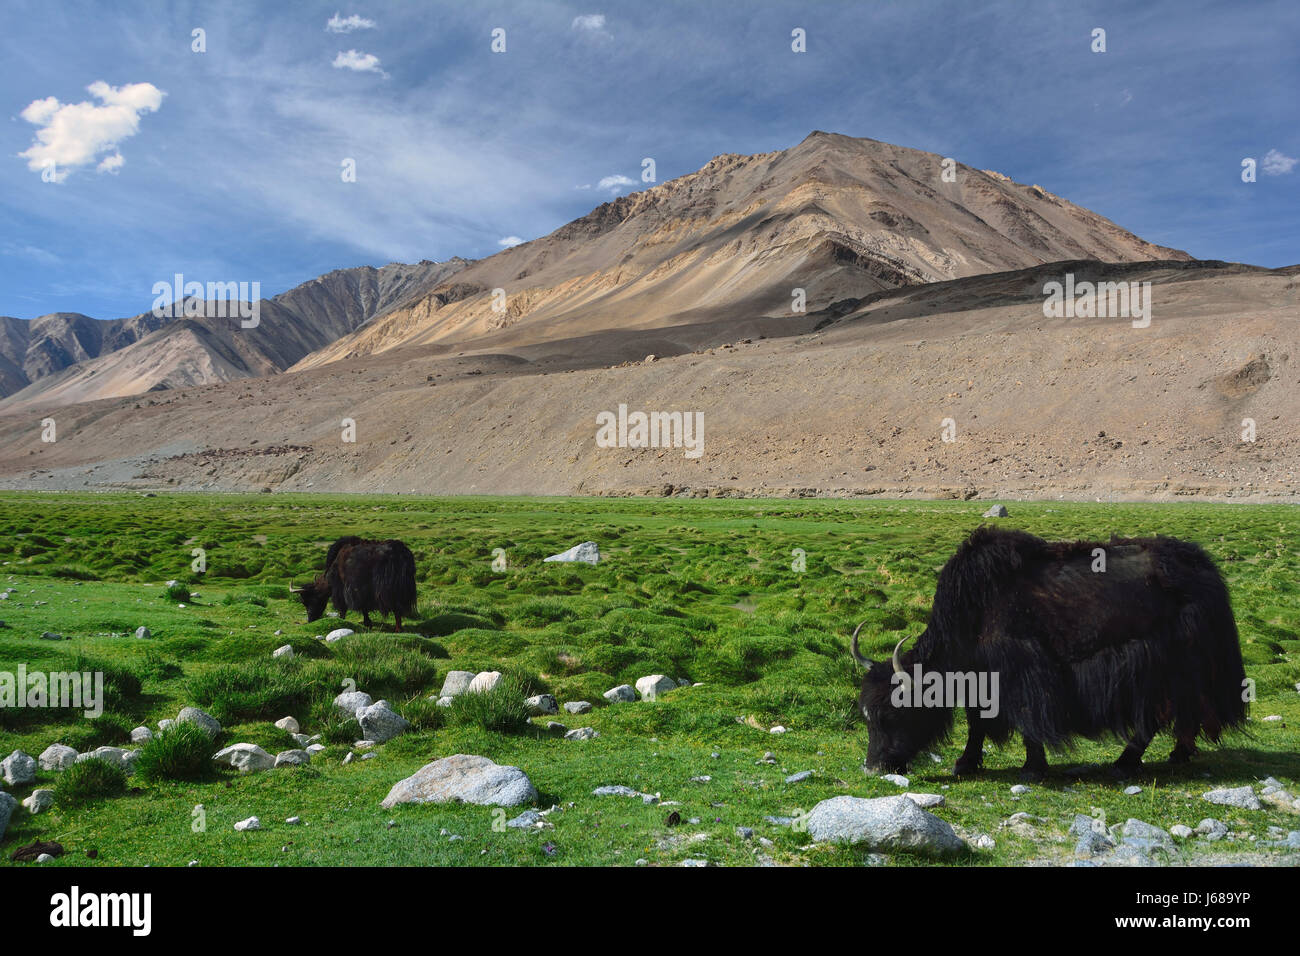 L'énorme tibétain peluche noir yaks paissent dans les pâturages de haute montagne parmi les hautes collines, le nord de l'Inde. Banque D'Images